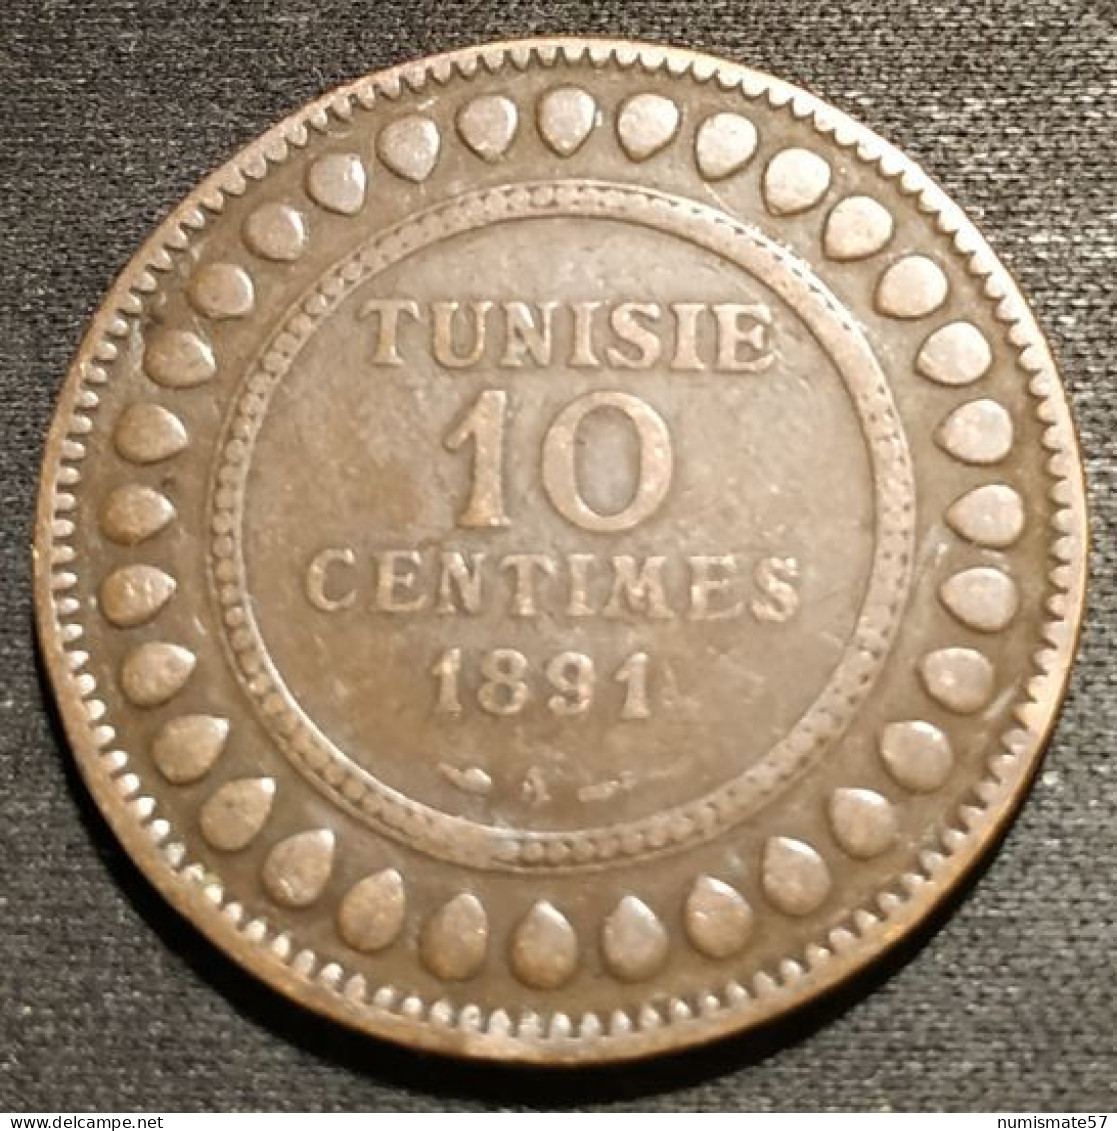 TUNISIE - TUNISIA - 10 CENTIMES 1891 ( 1308 ) - KM 222 - Ali III - Protectorat Français - Tunisie